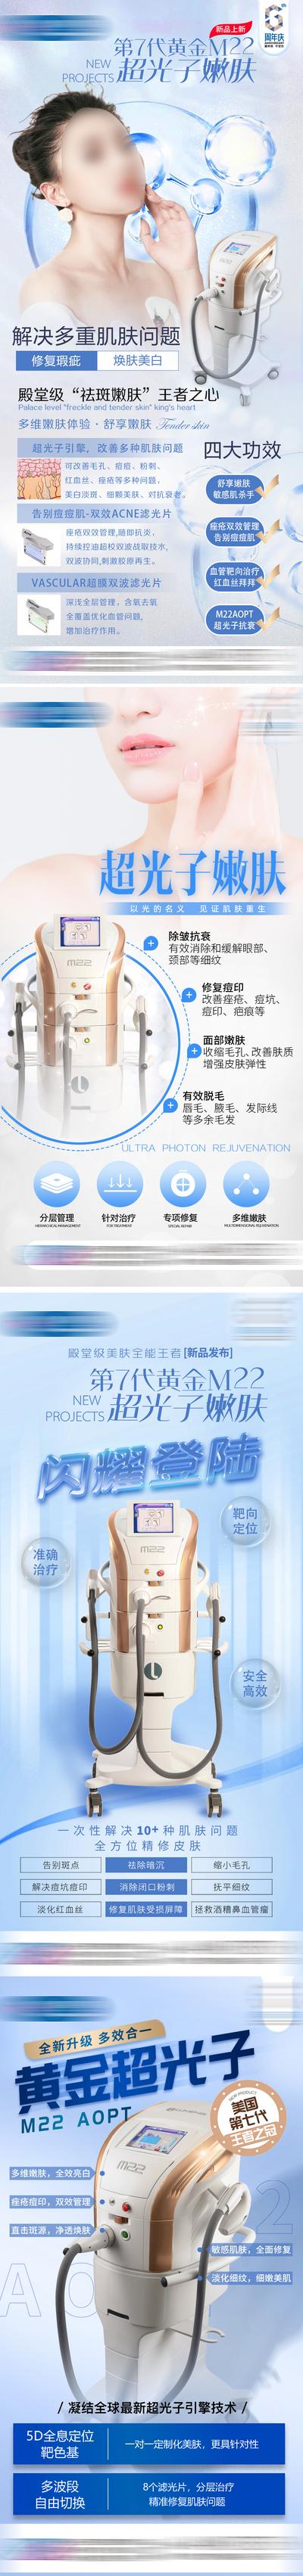 【南门网】海报 医美 m22超光子 AOPT 项目 简约